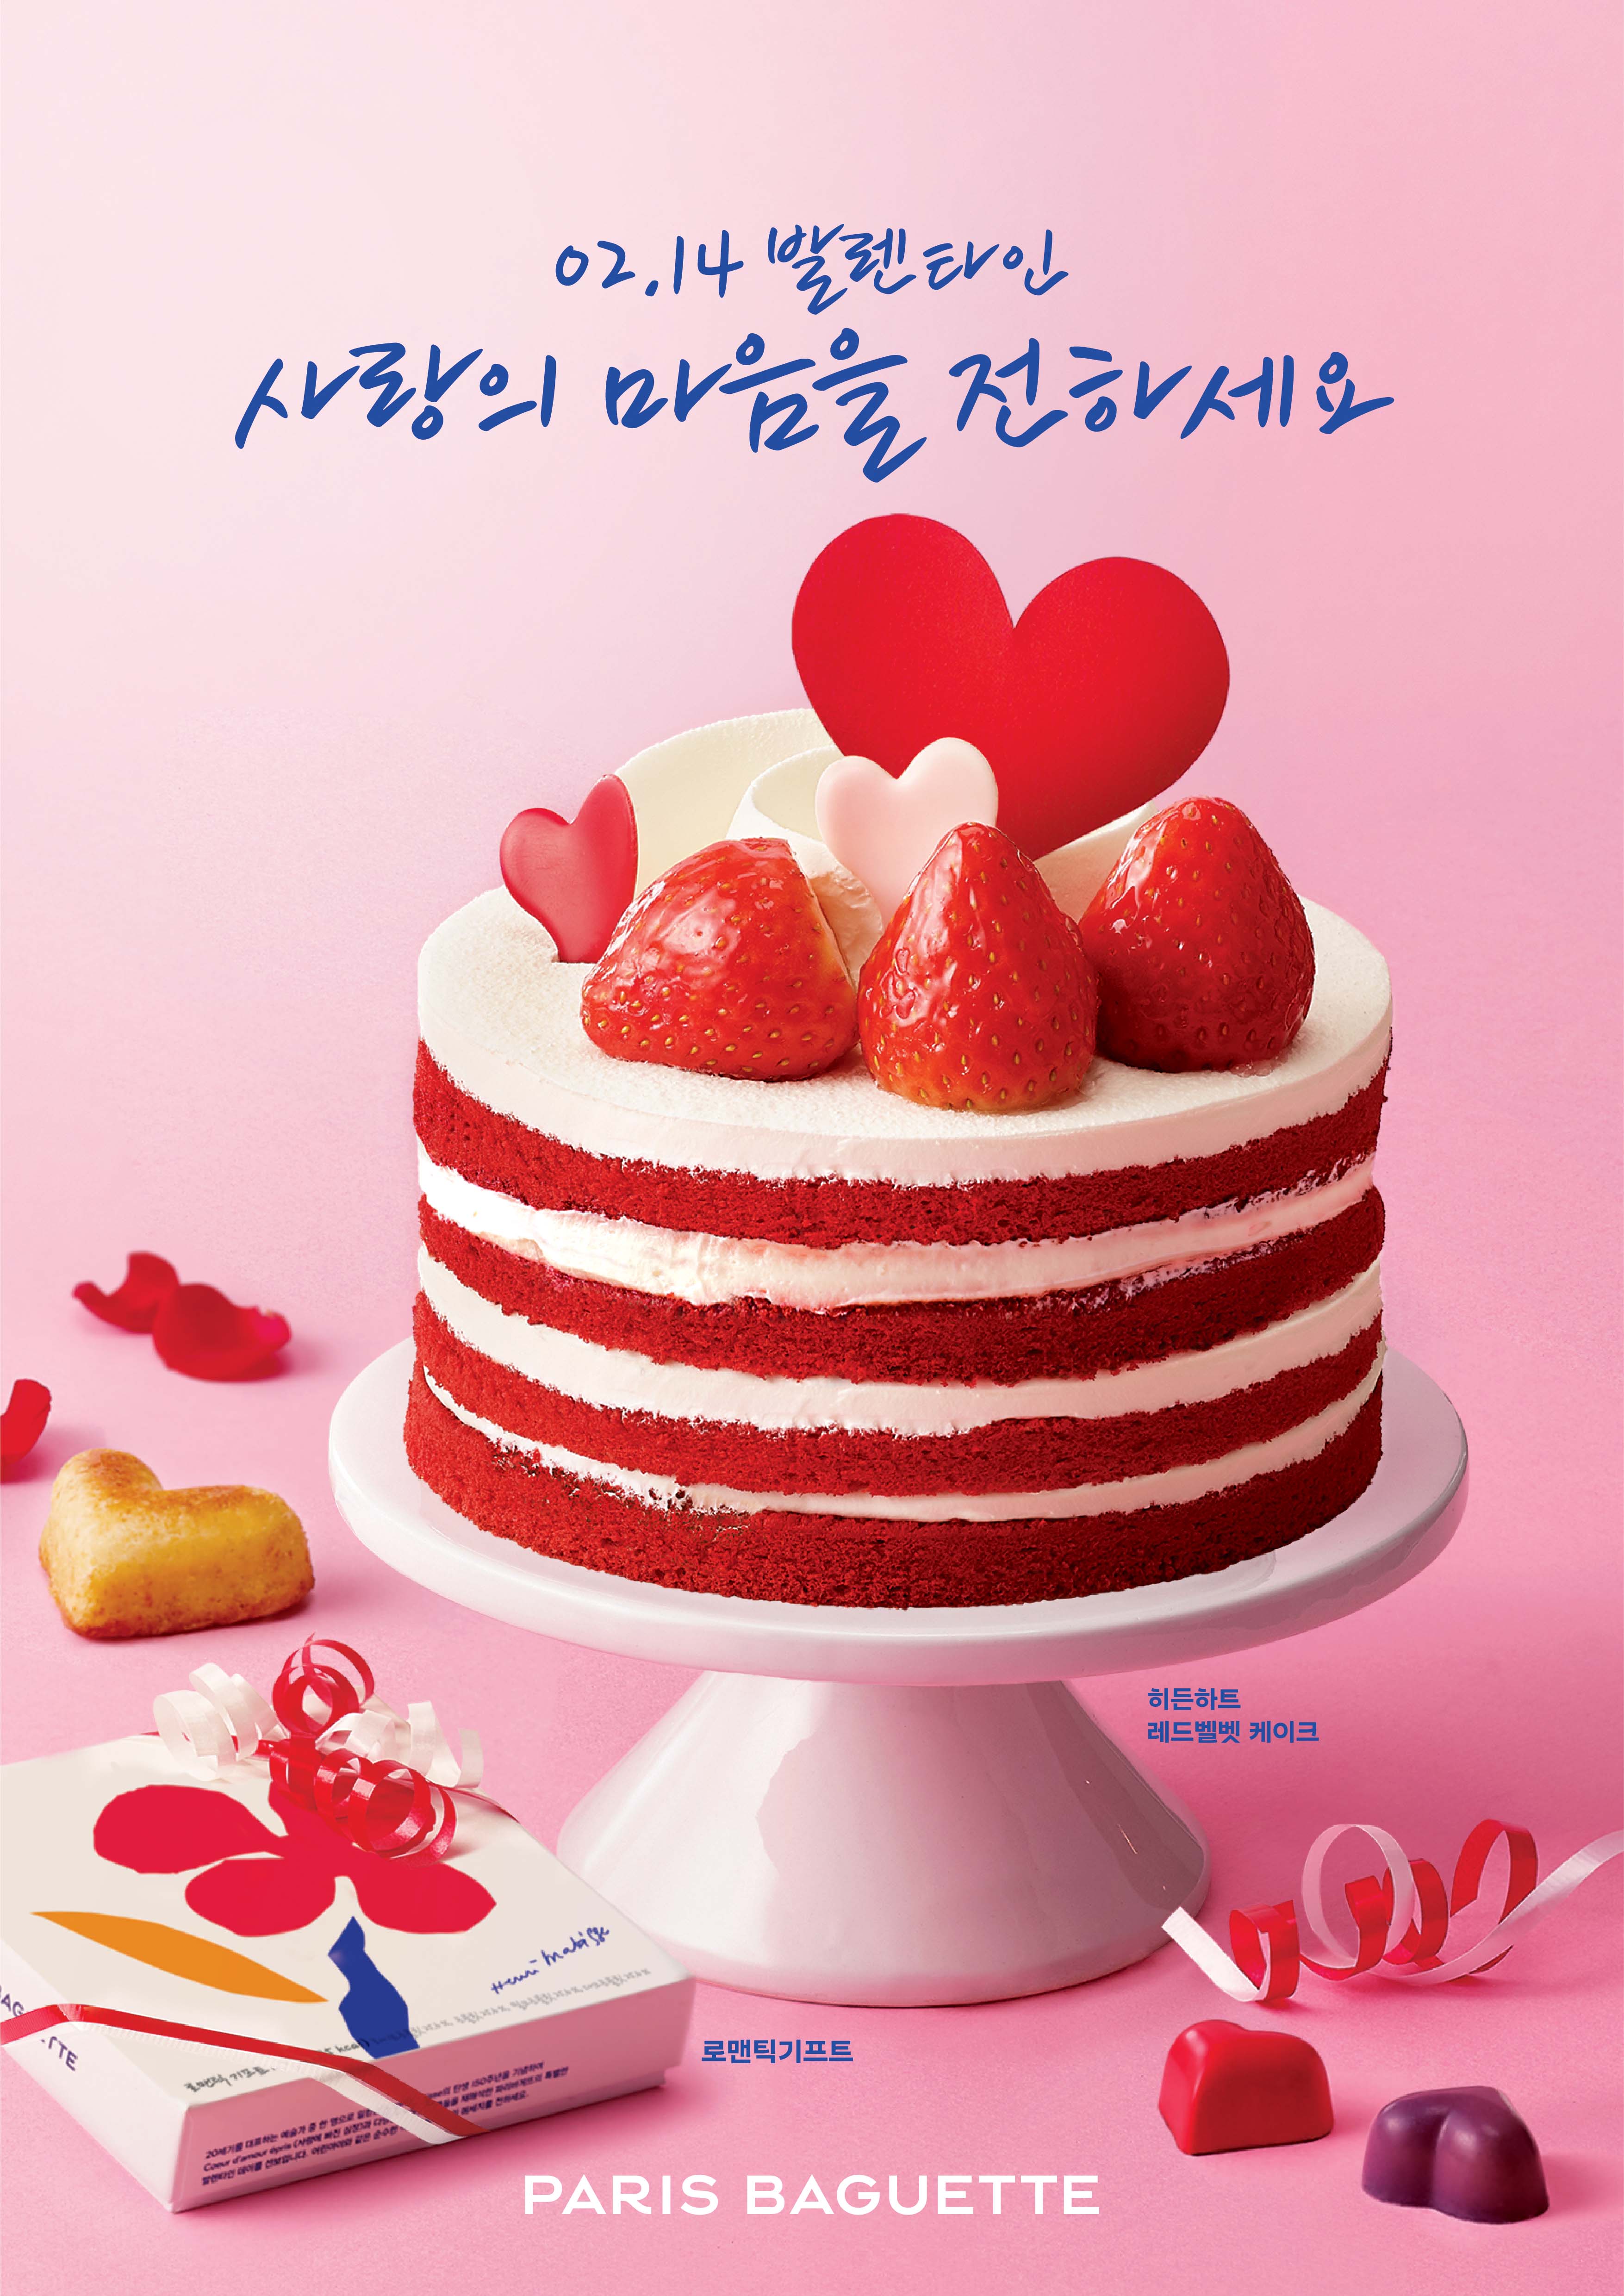 히든하트 레드벨벳 케이크